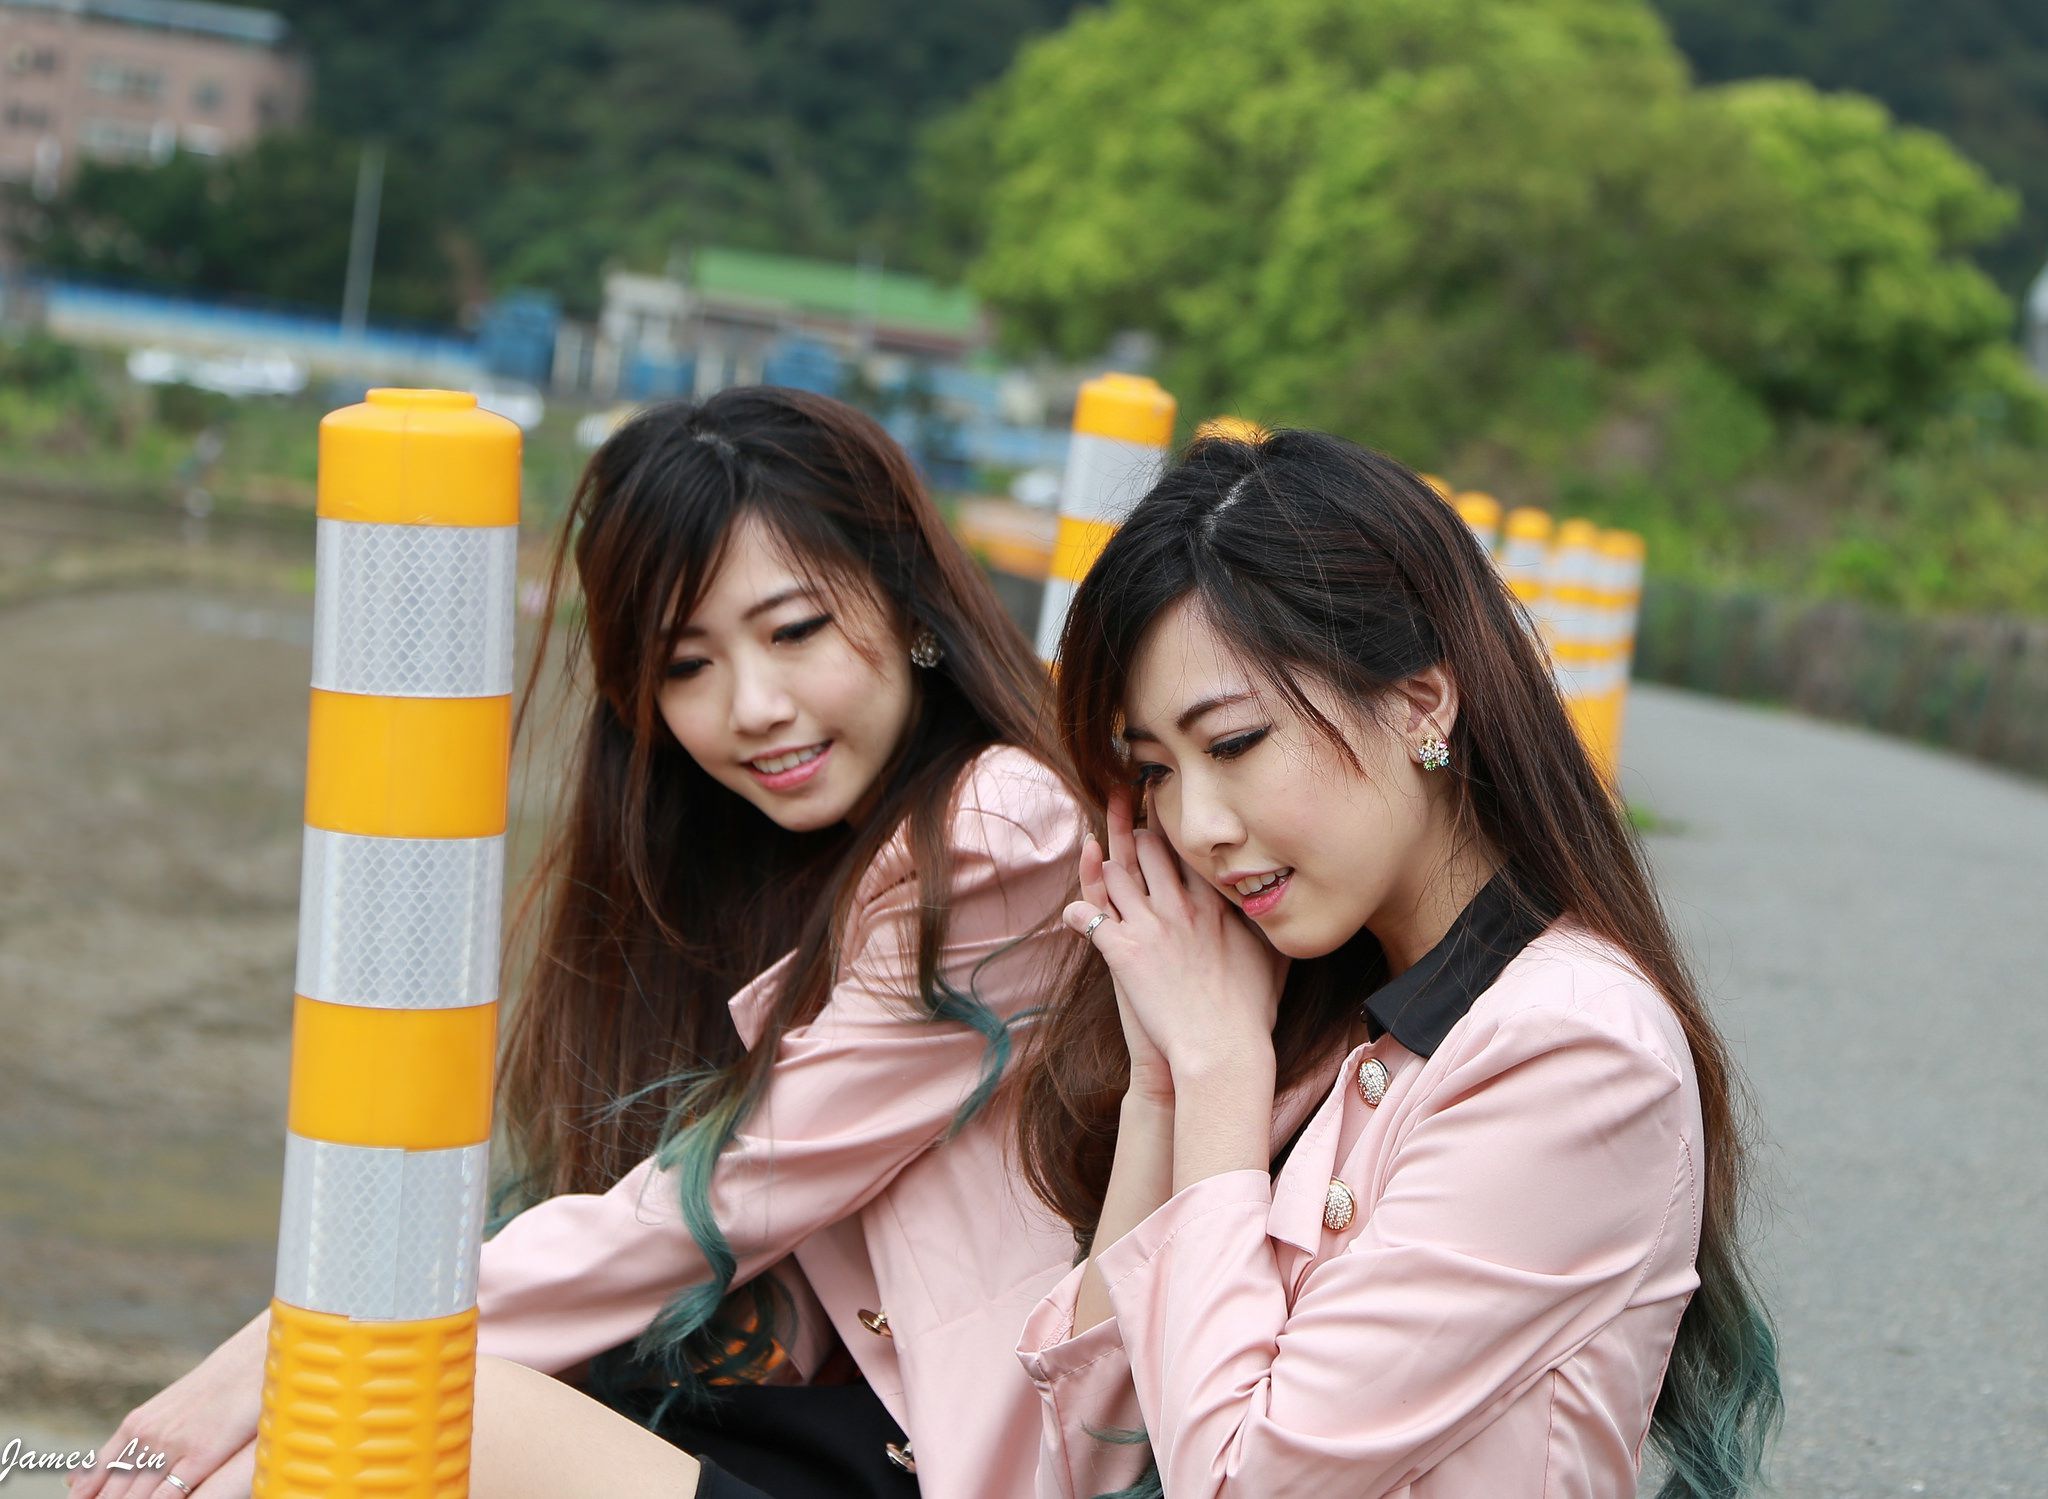 极品清纯甜美台湾双胞胎姐妹花清新外拍/(64P)